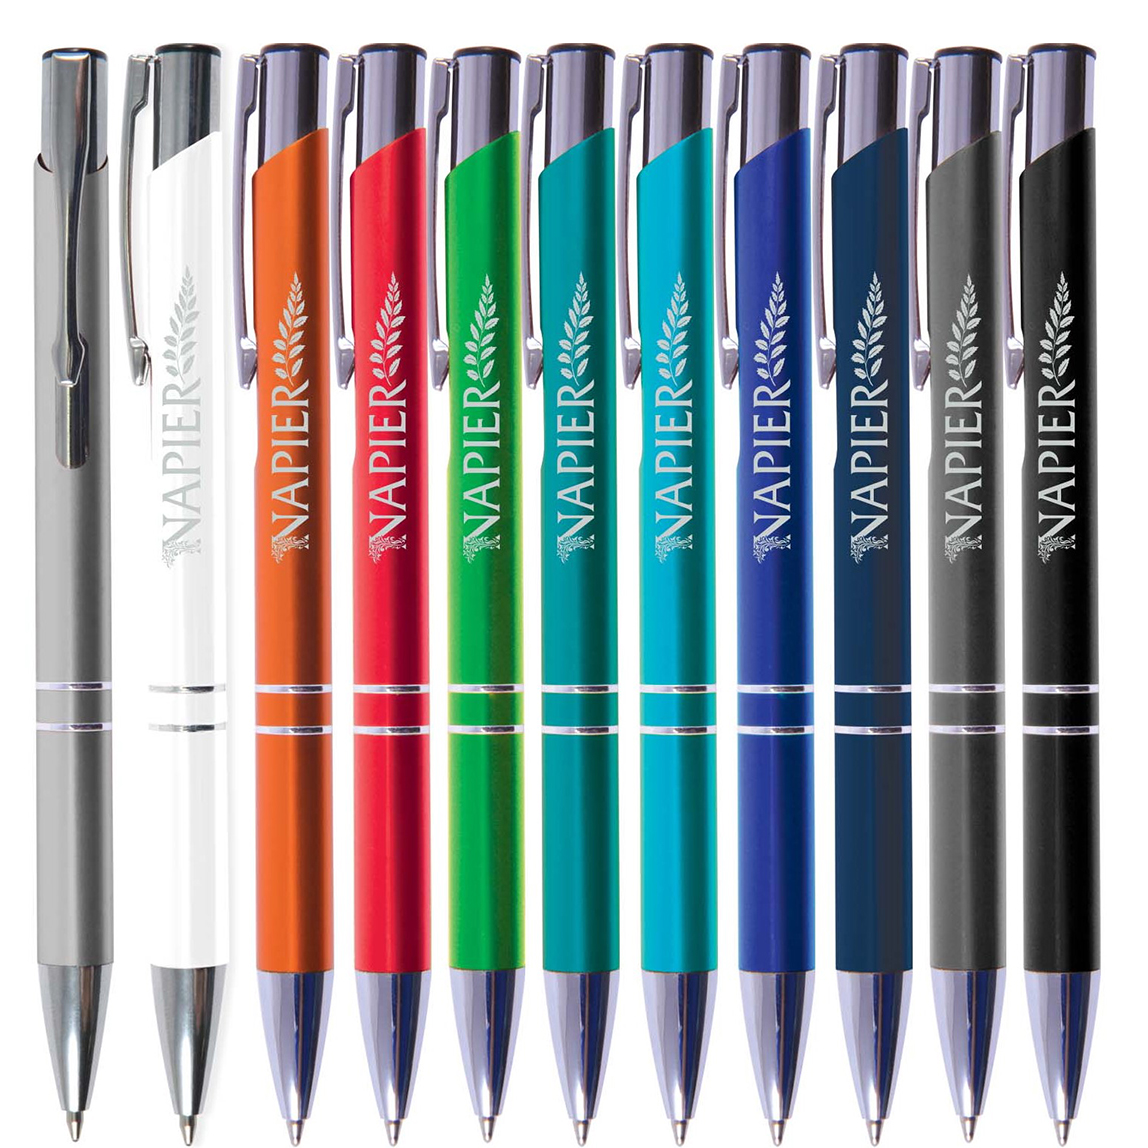 Napier Pen Features